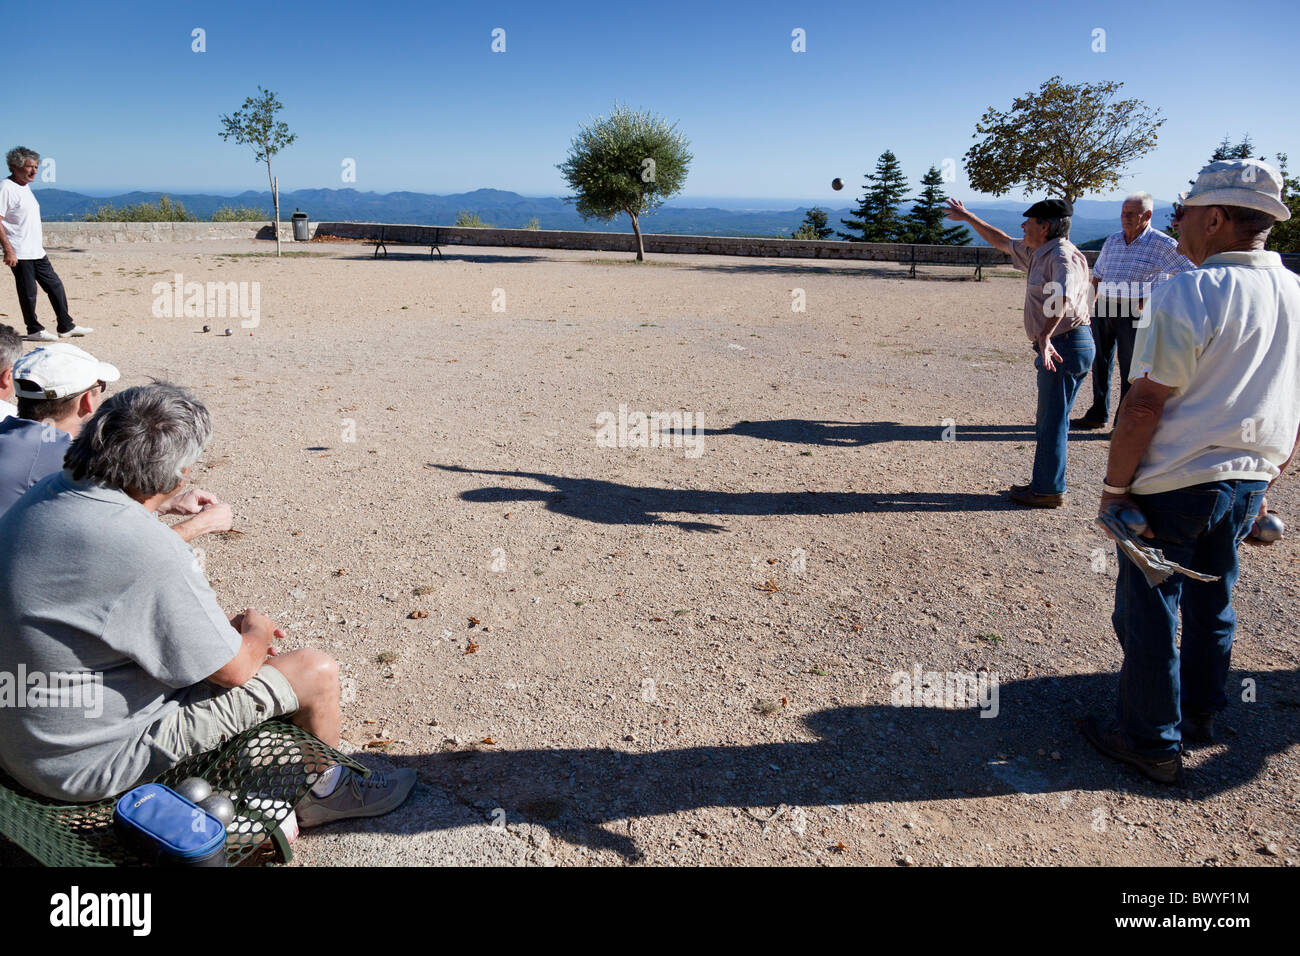 Un joueur lance sa boule tandis que regardé attentivement par les concurrents et les spectateurs, Mons, Var, Provence-Alpes-Côte d'Azur, France. Banque D'Images